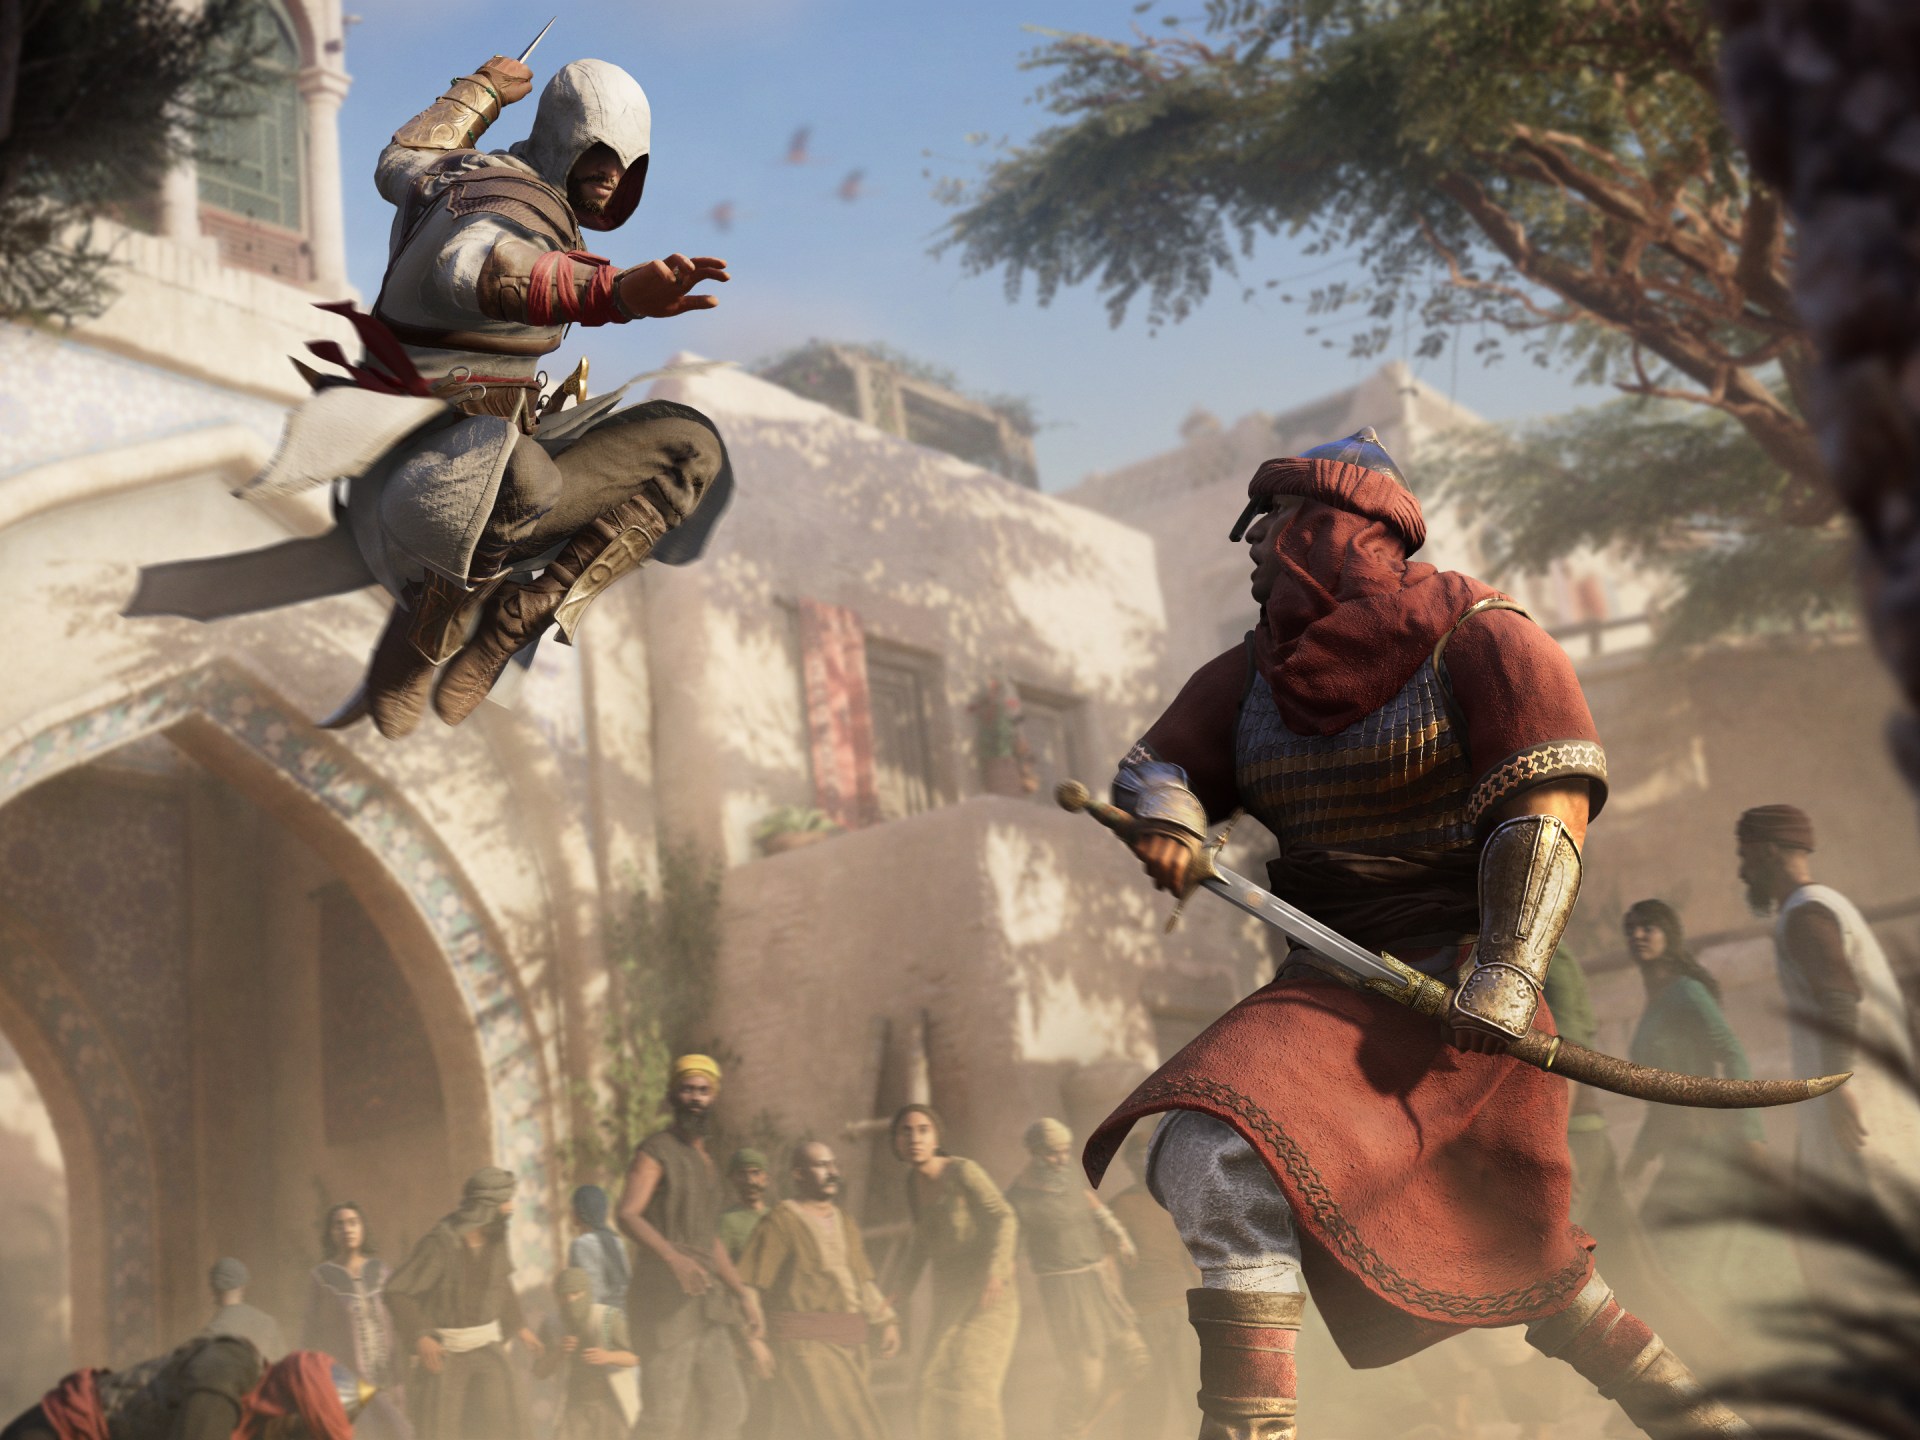 لعبة الفيديو Assassin’s Creed الجديدة تعيد الحياة إلى “العصر الذهبي” لبغداد |  الأخبار الترفيهية